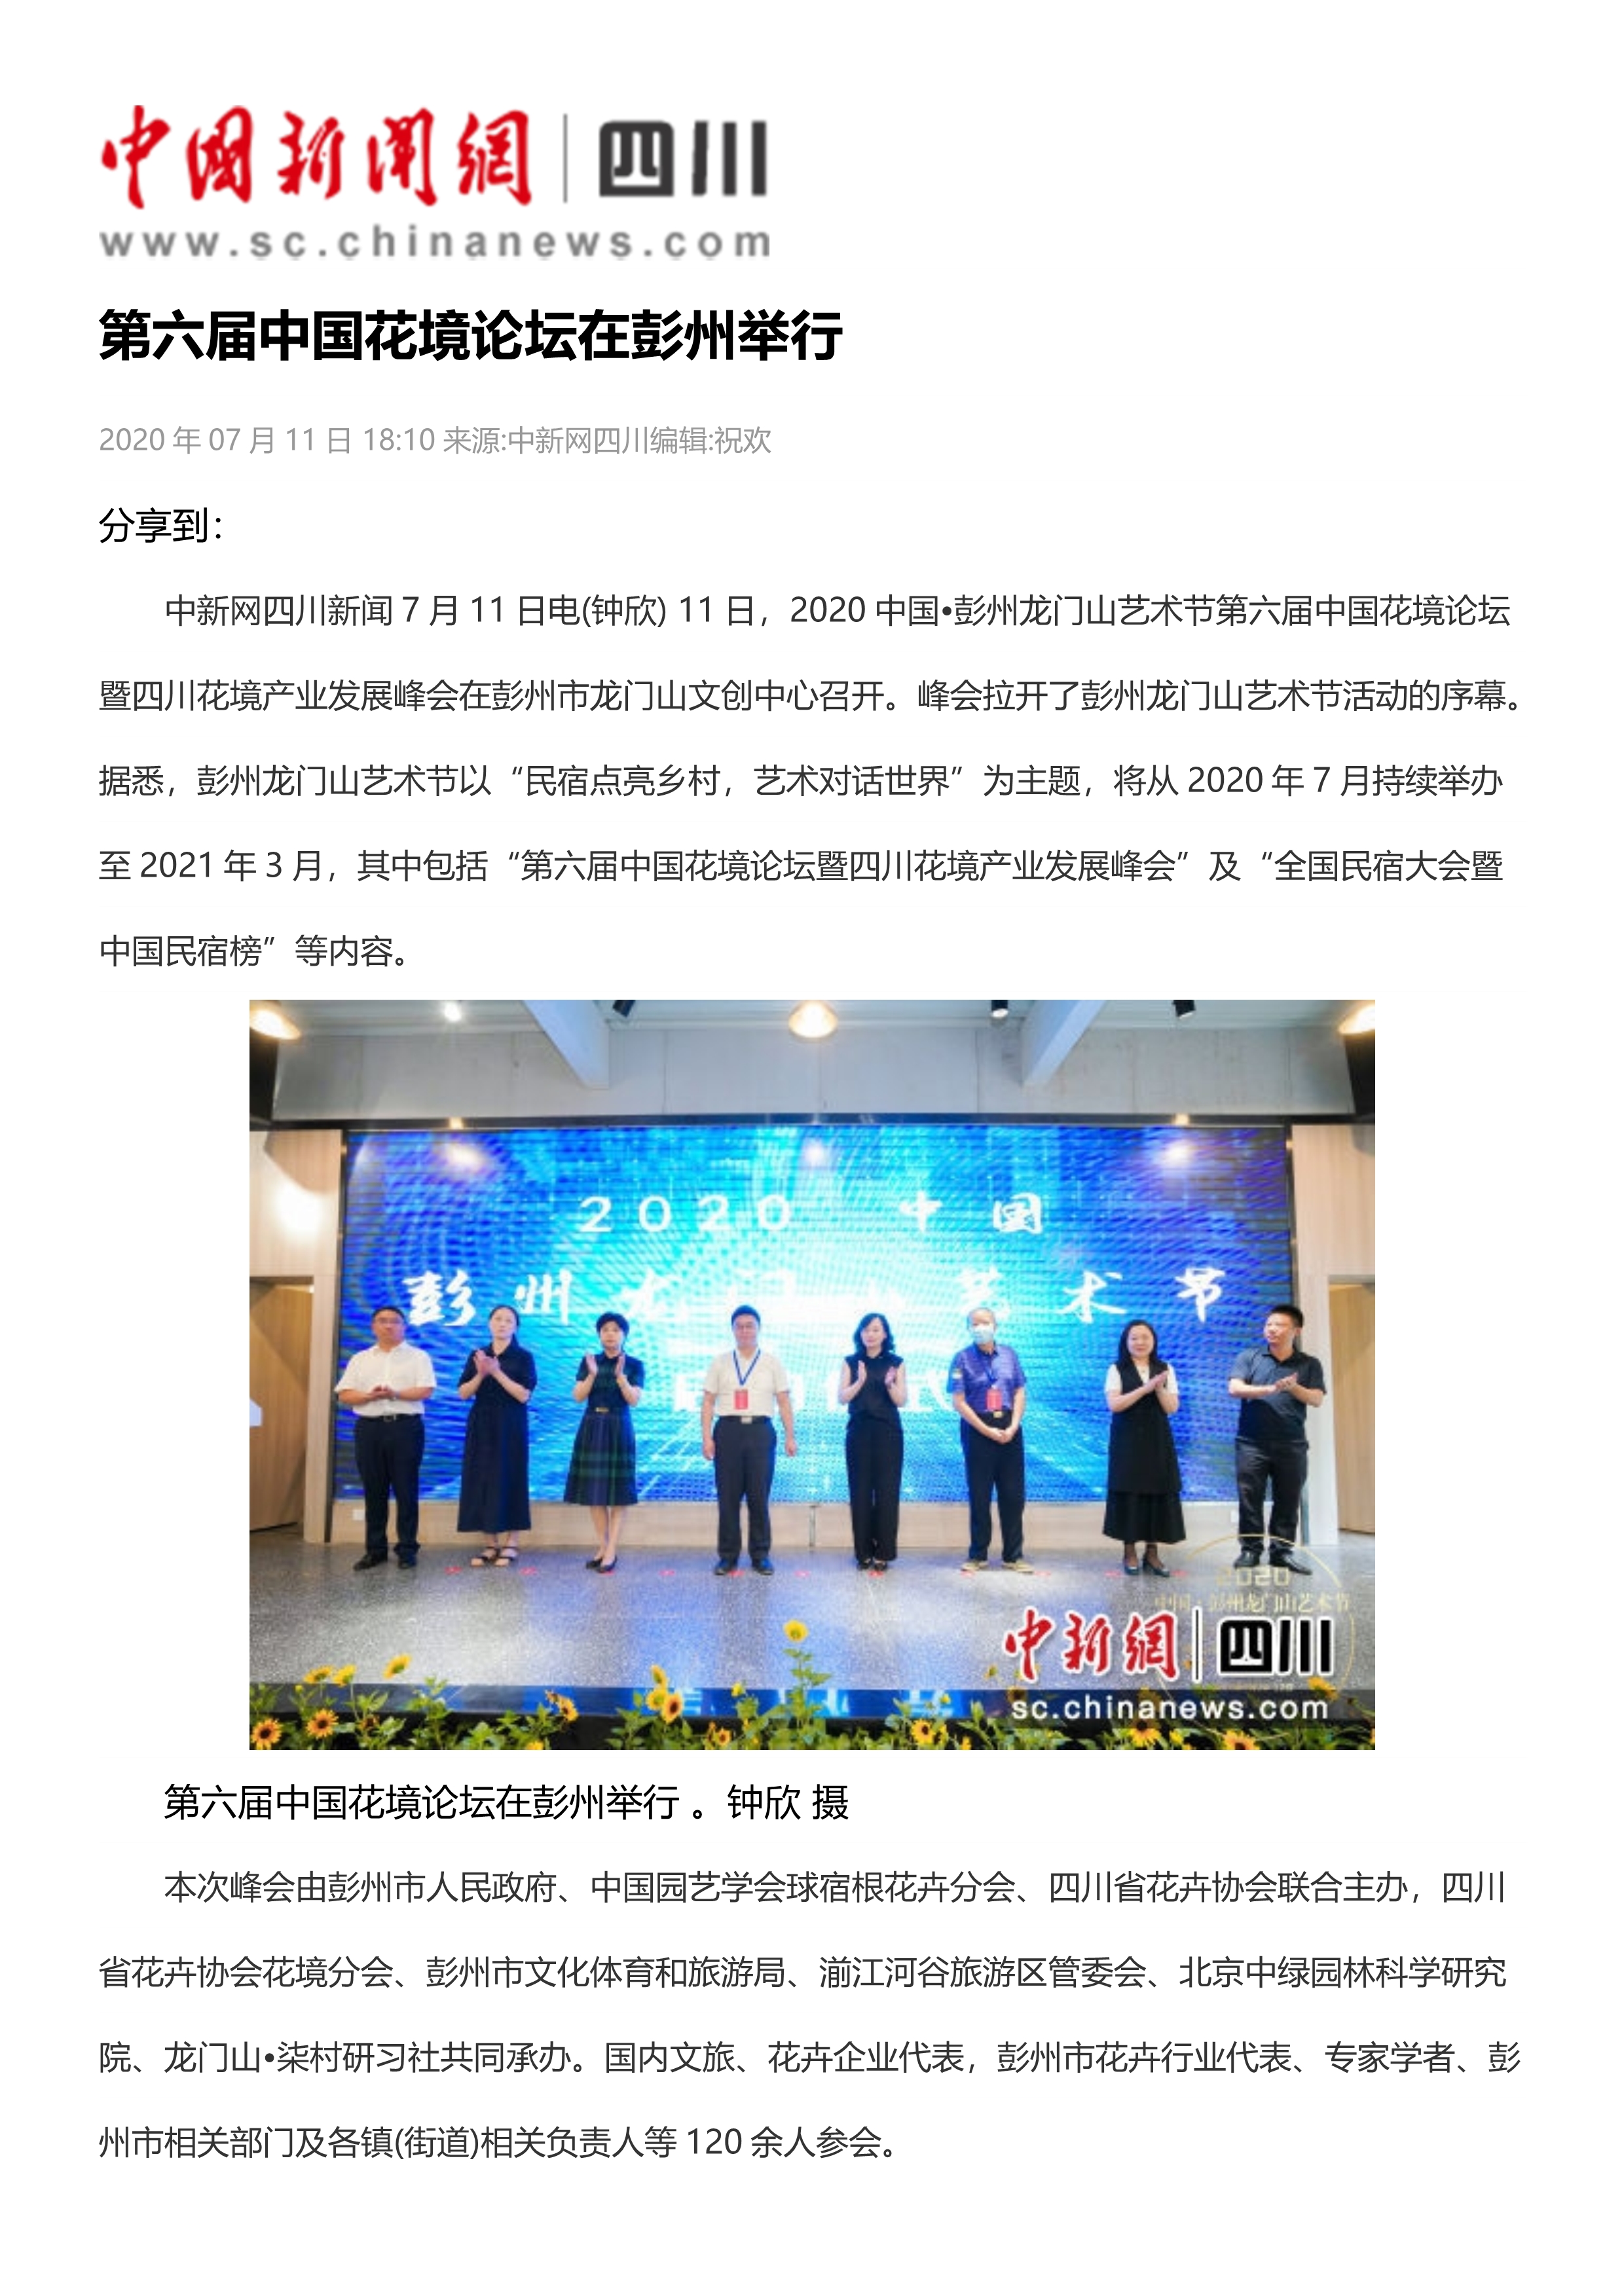 FB 06第六届中国花境论坛在彭州举行_1